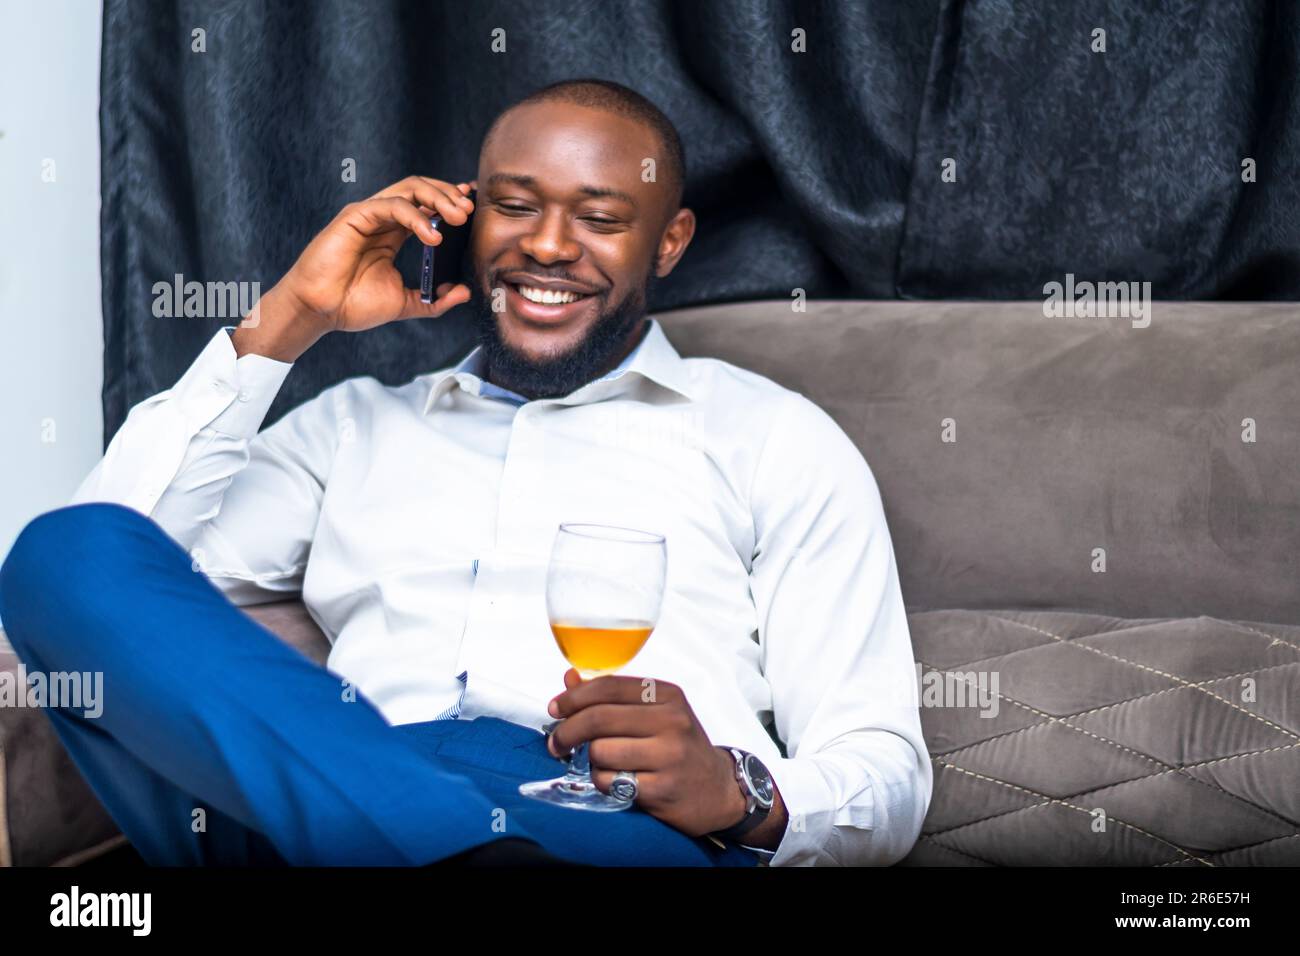 jeune homme excité communiquant avec un téléphone portable tenant un wineglass Banque D'Images